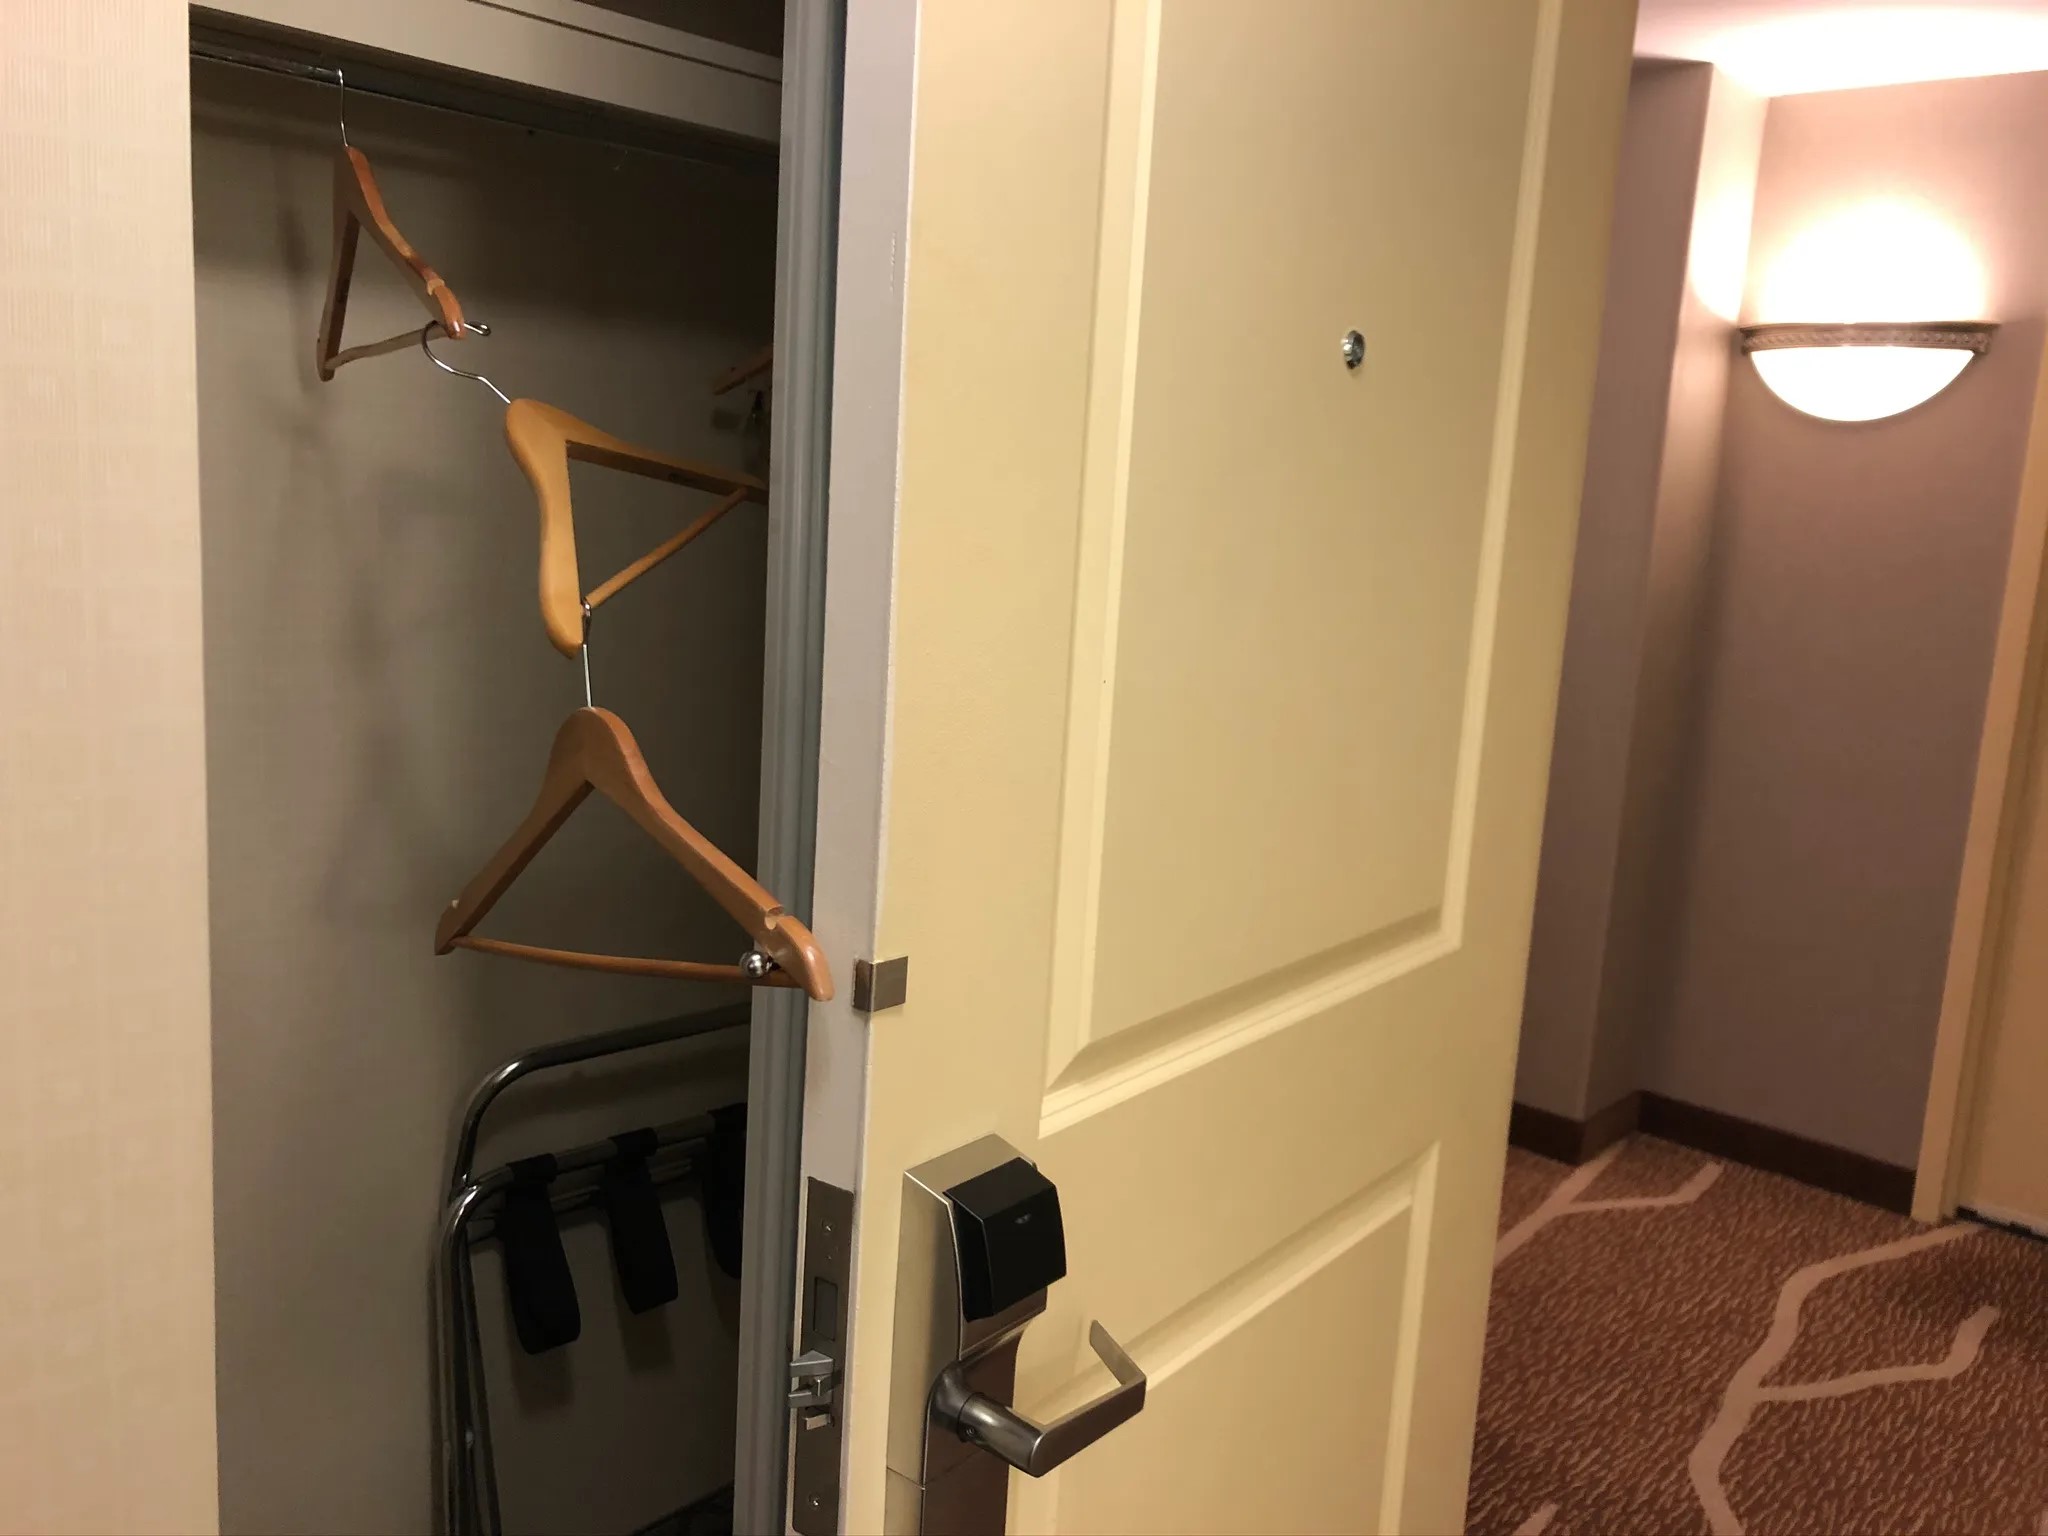 How To Lock A Closet Door